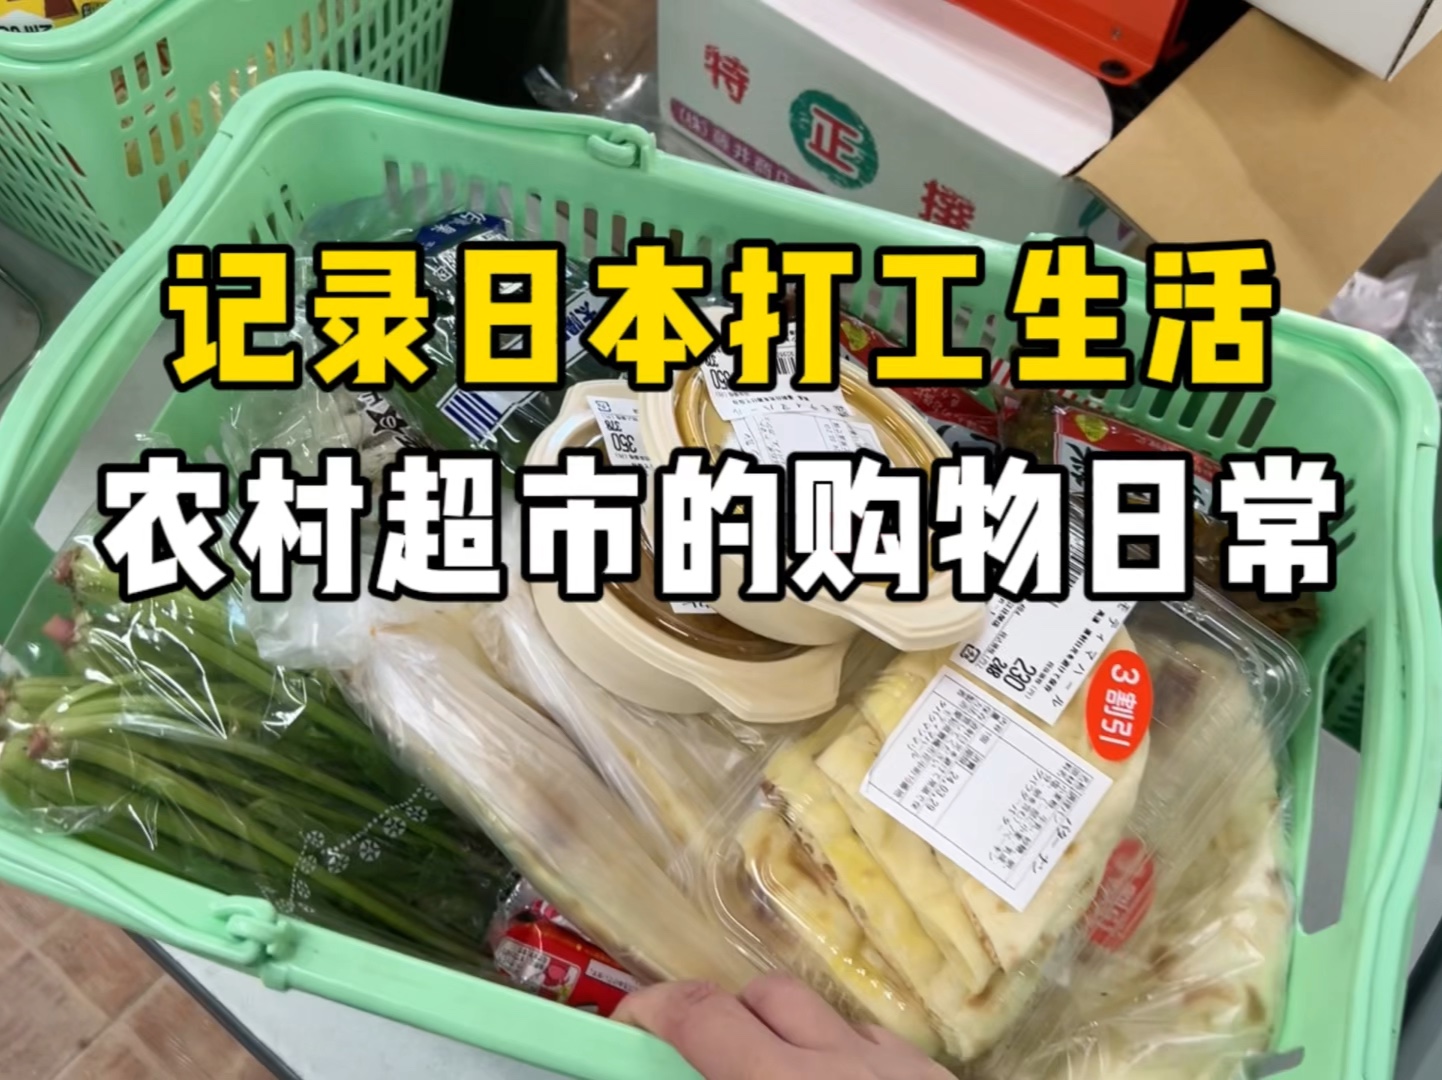 记录日本打工生活vlog，用一万日元逛农村超市是种什么样的体验？